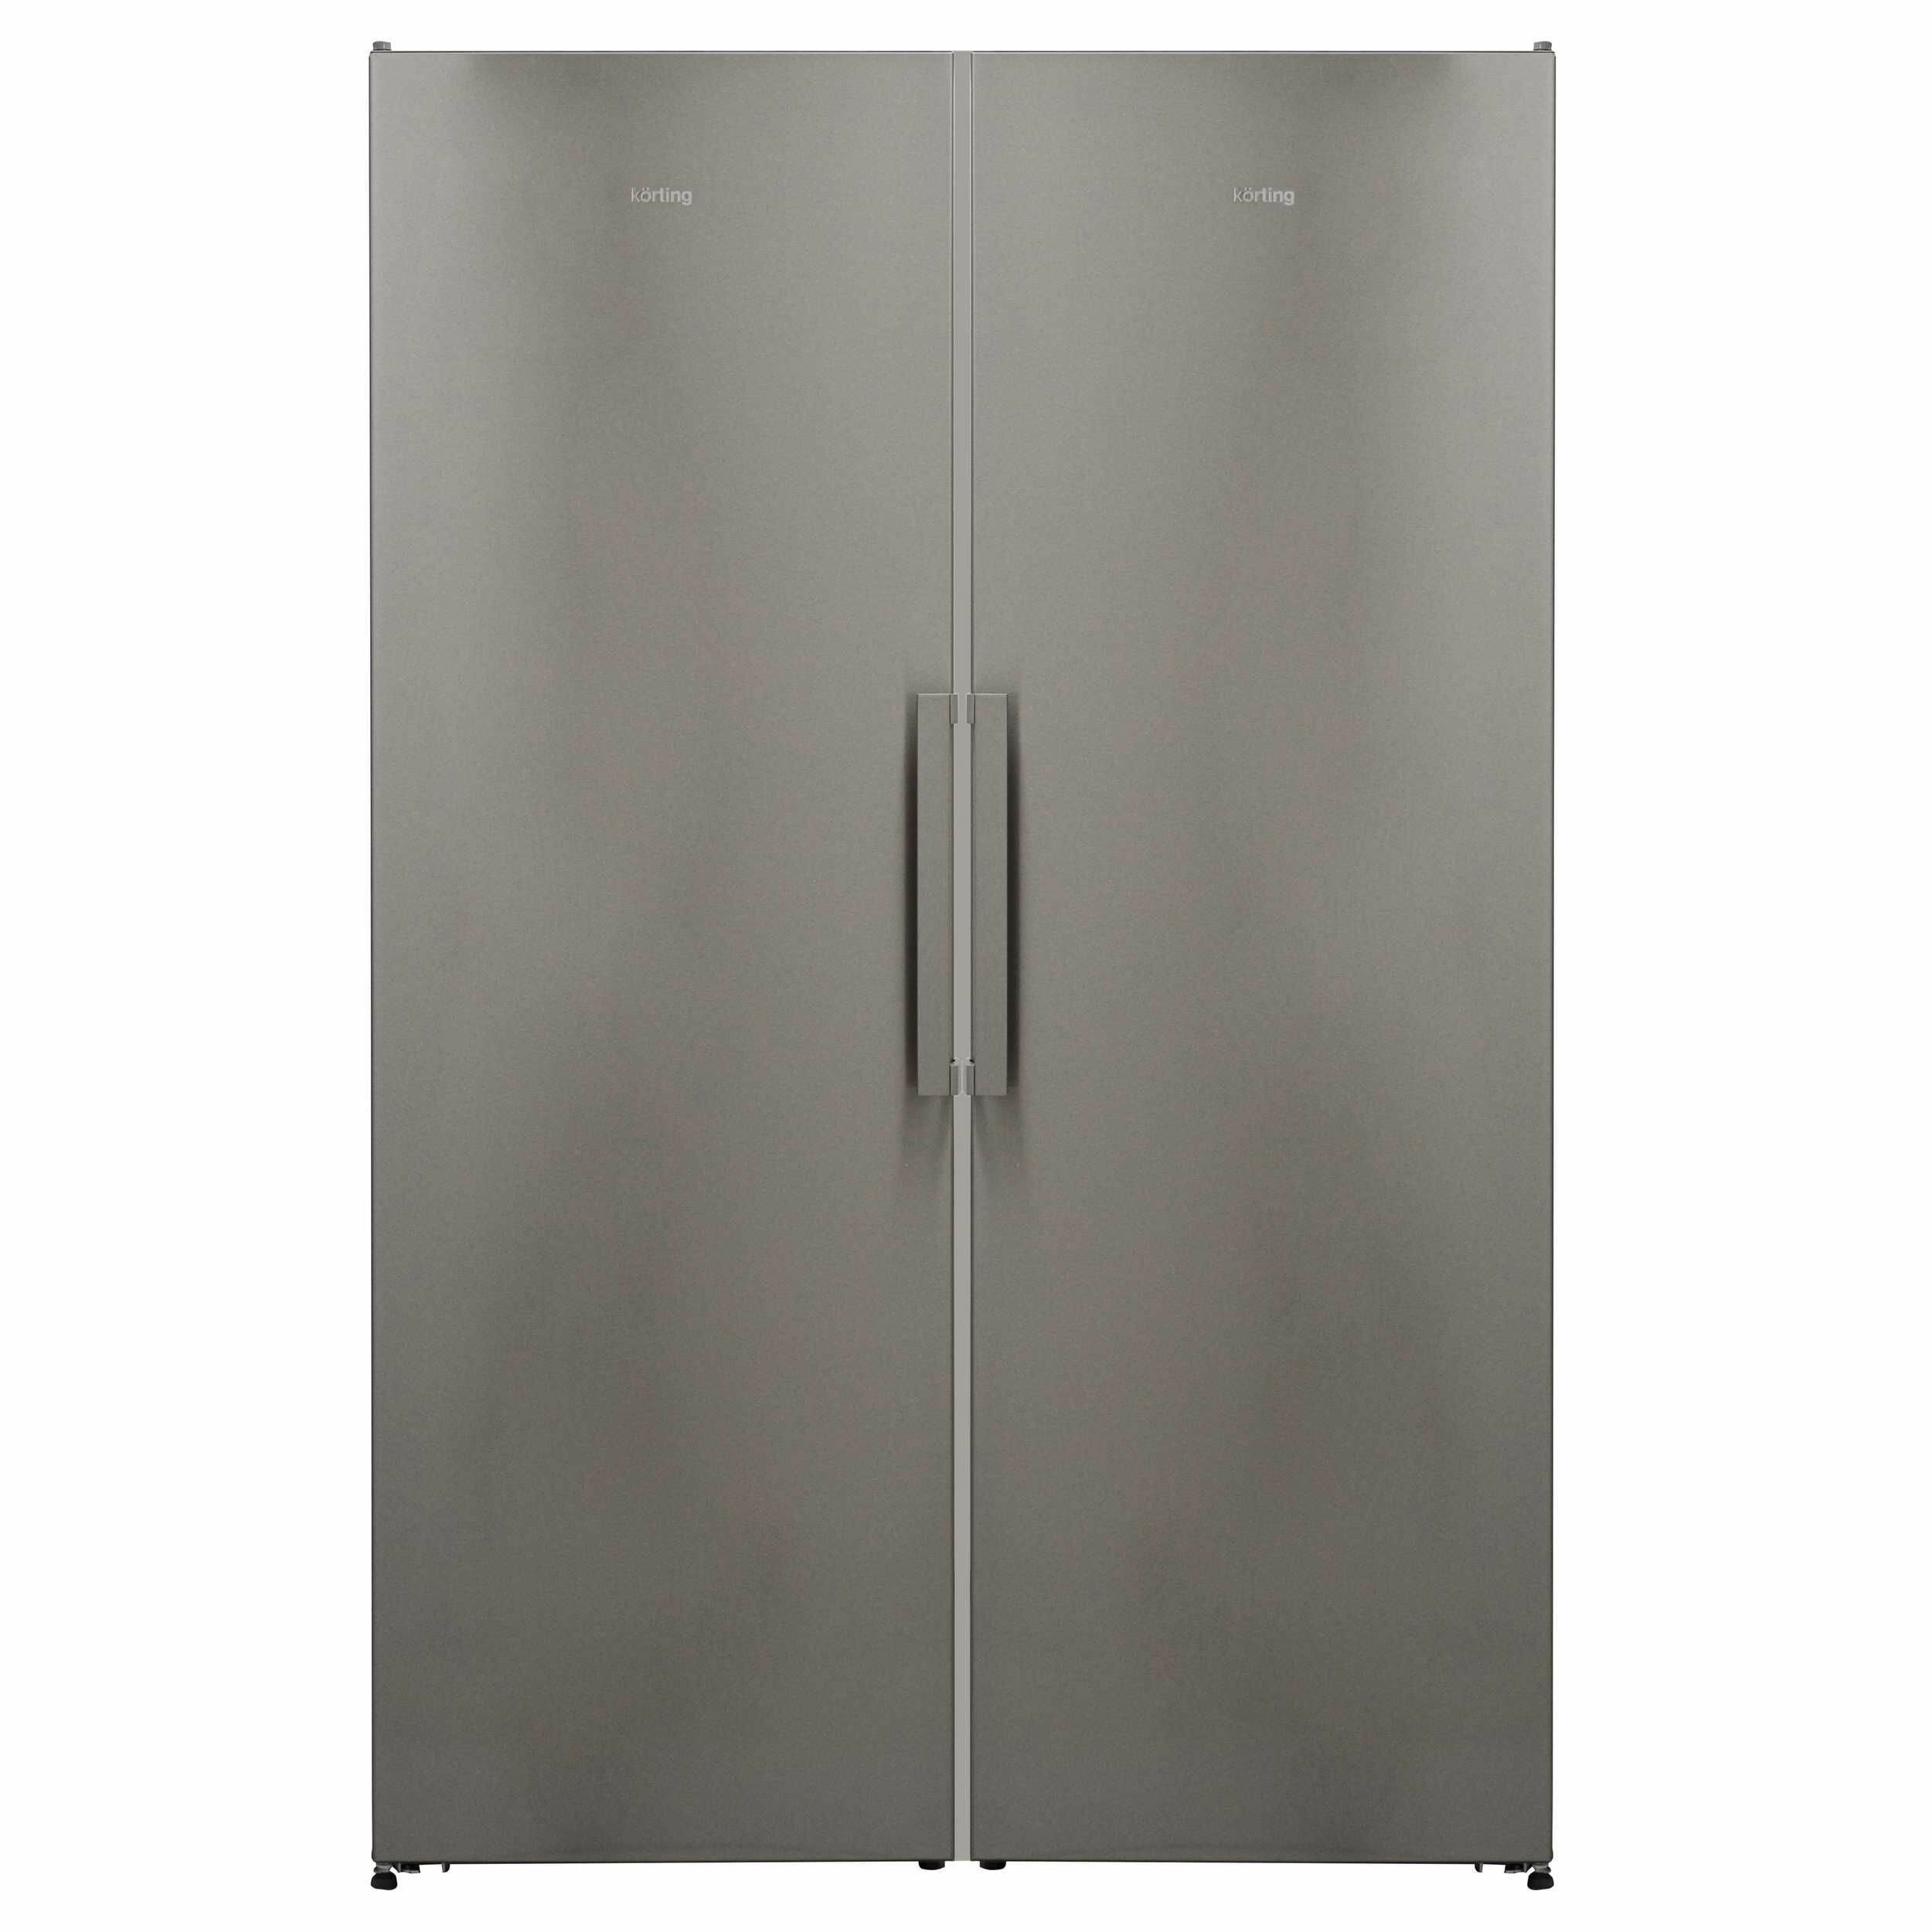 Однокамерный холодильник Korting - фото №6